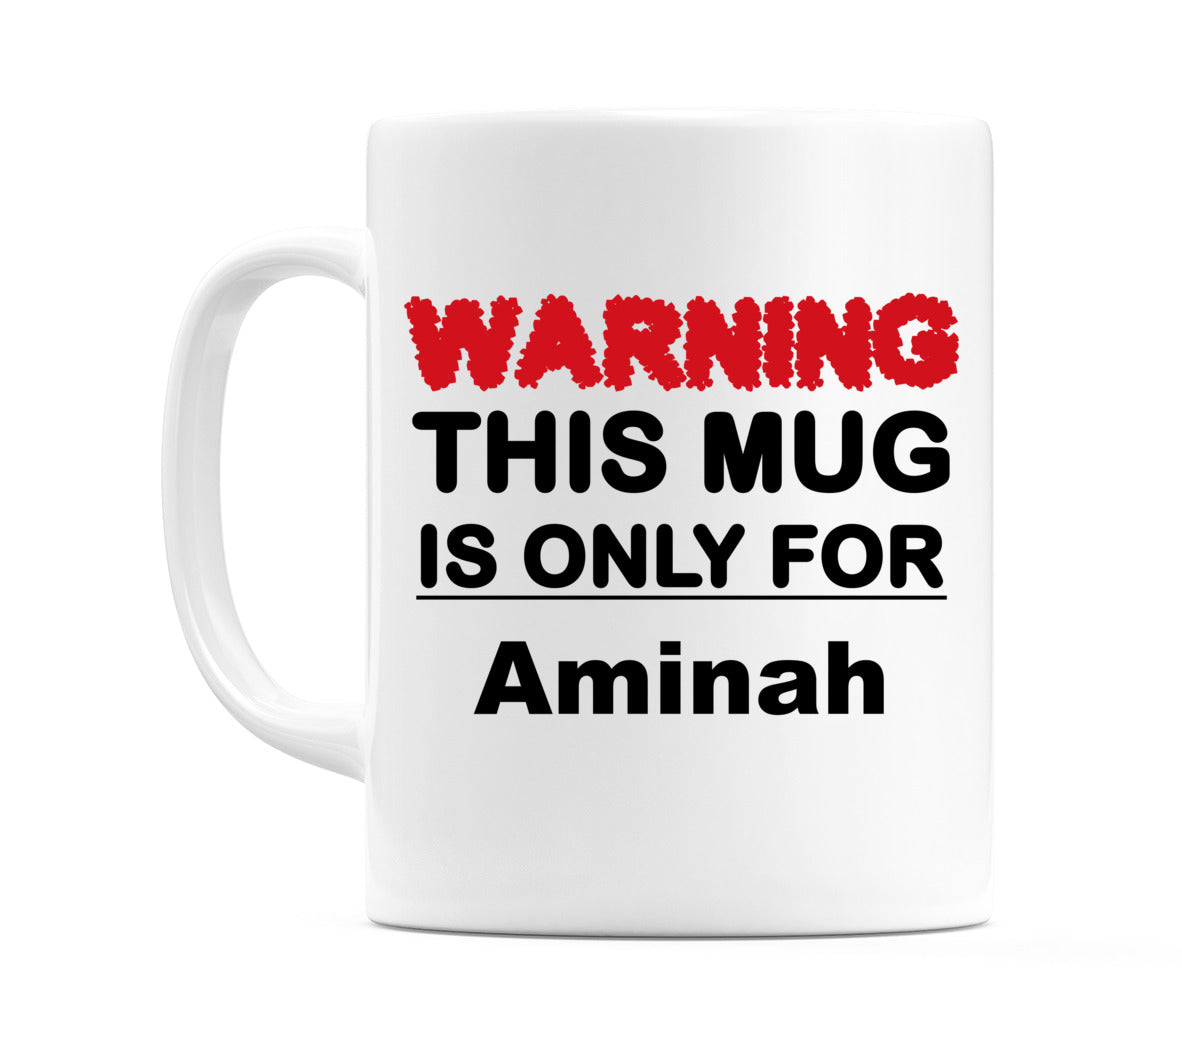 Warning This Mug is ONLY for Aminah Mug